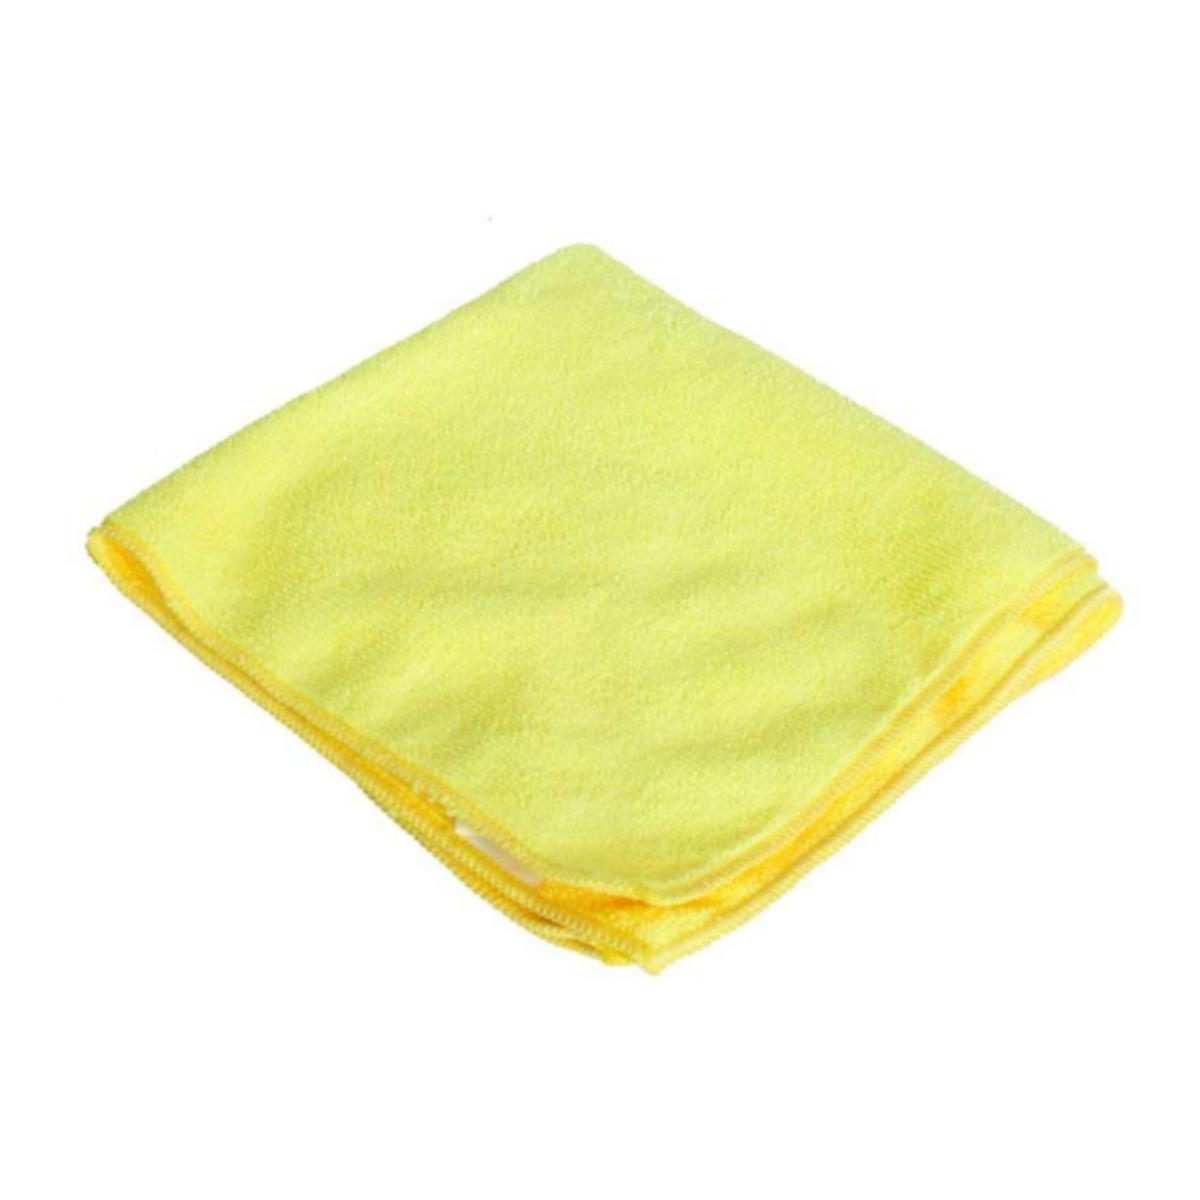 Paño de micro fibra color amarillo       Paño de micro fibra color amarilla , medida: 40 x 40 cm bolsa con 6 pzas                                                                                                                                                                                        .                                        - MOPS180